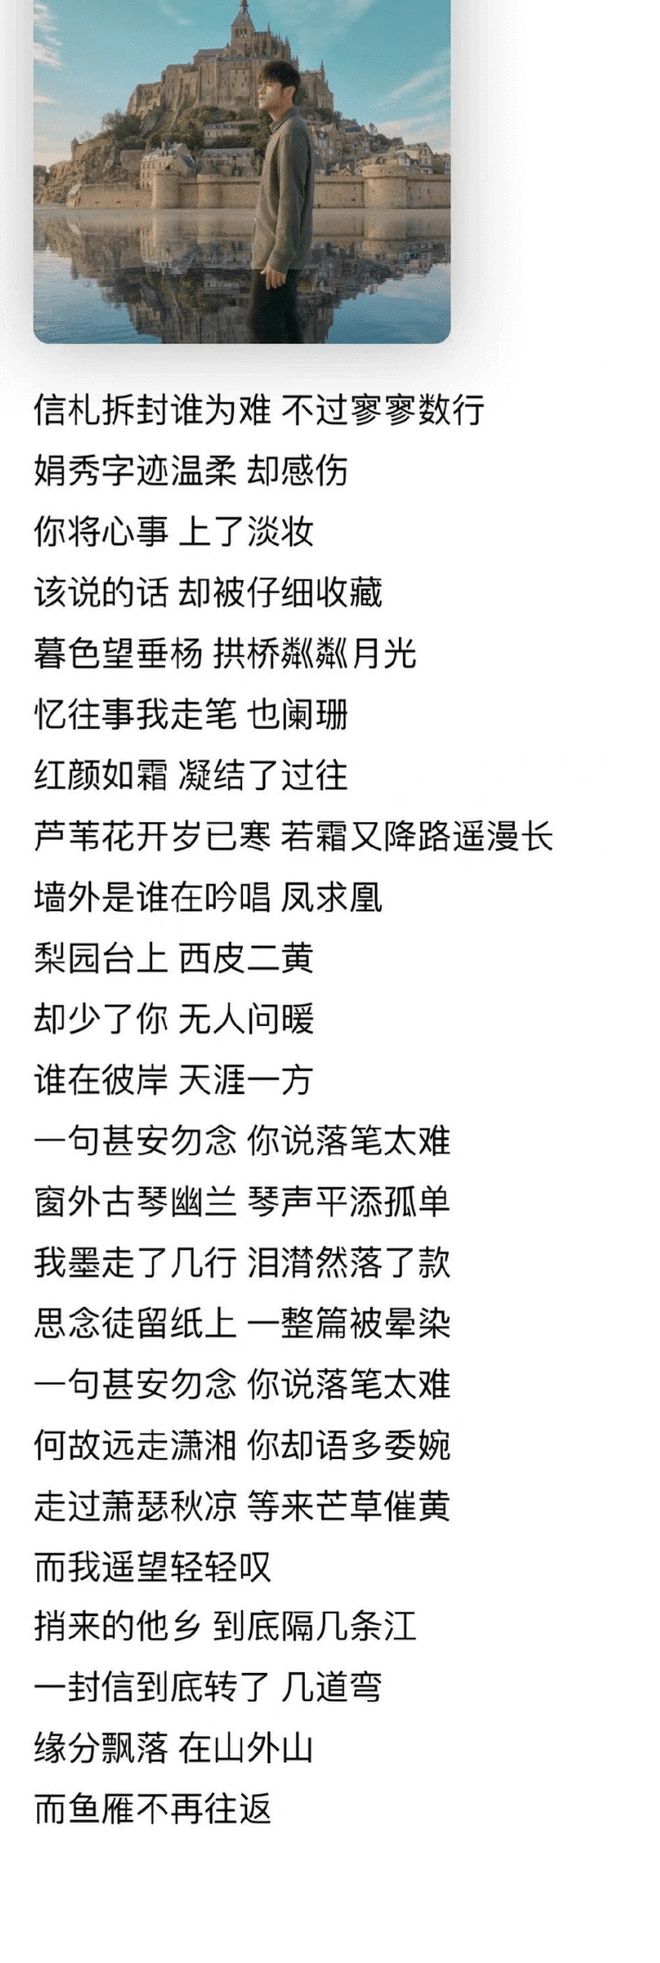 周杰伦新专辑提前上线引惊喜 中国风歌曲广受好评